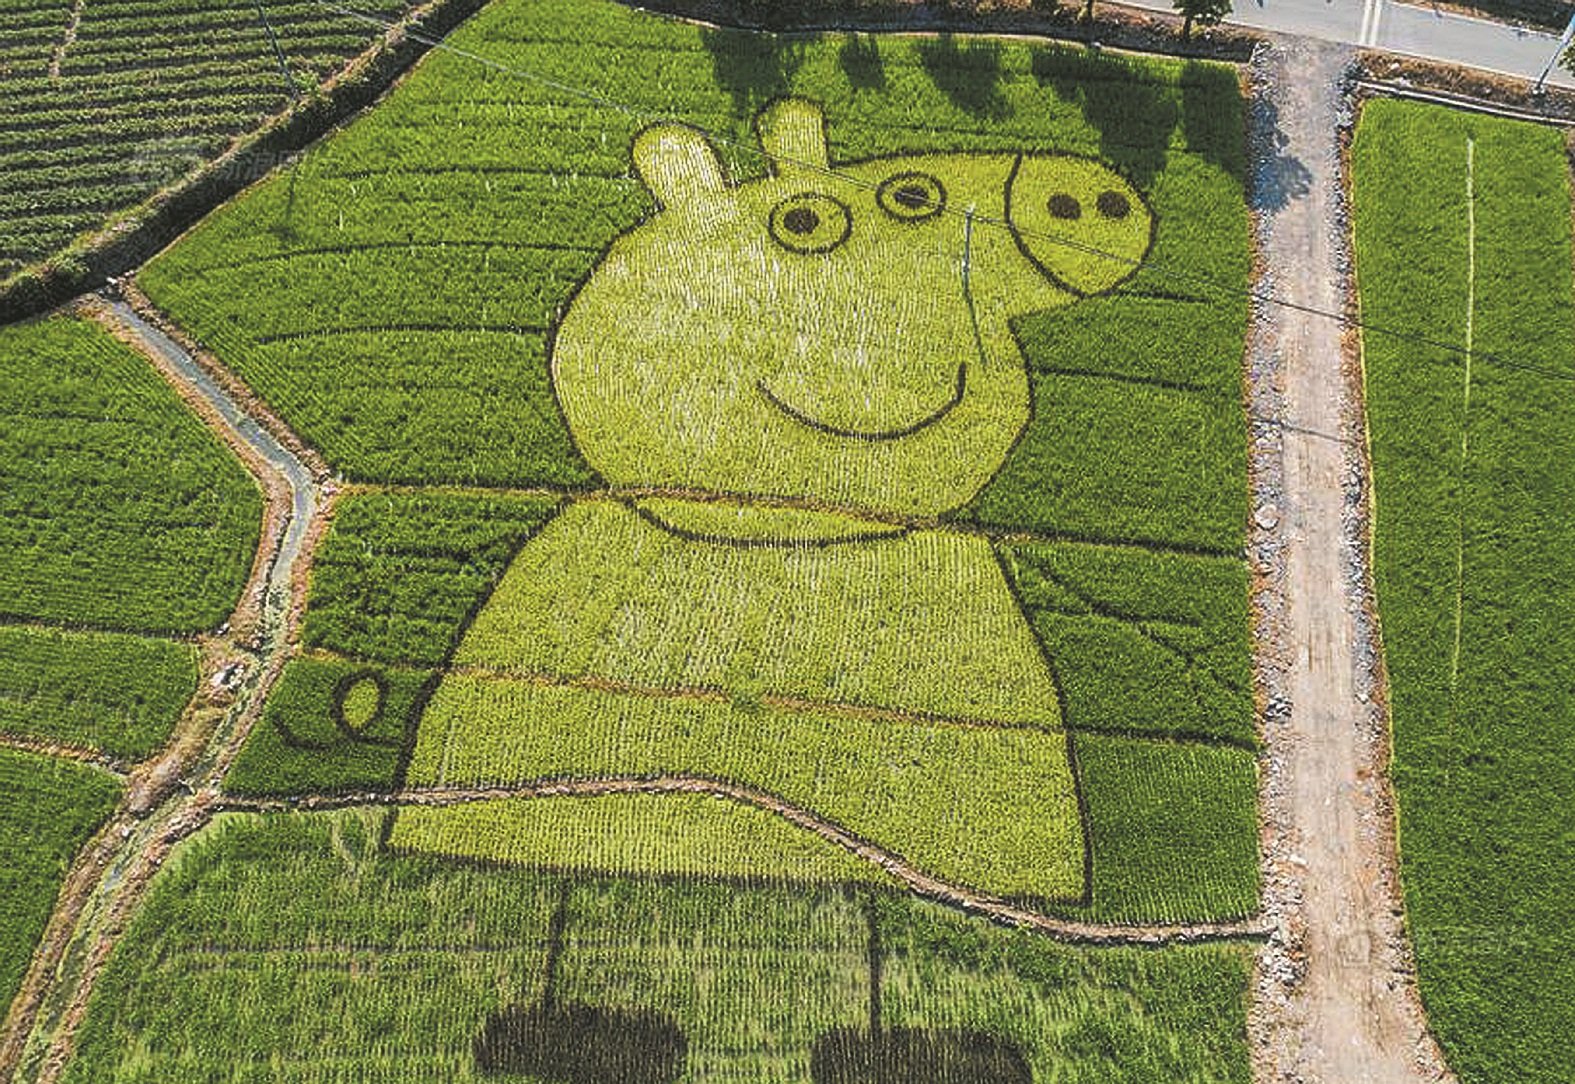 中国安徽黄山的农民在水稻田中搞起新花样，他们利用不同色彩的水稻画出各种不一样的创意图案。从高处俯瞰，只见“小猪佩奇”的造型在农田中清晰可见。